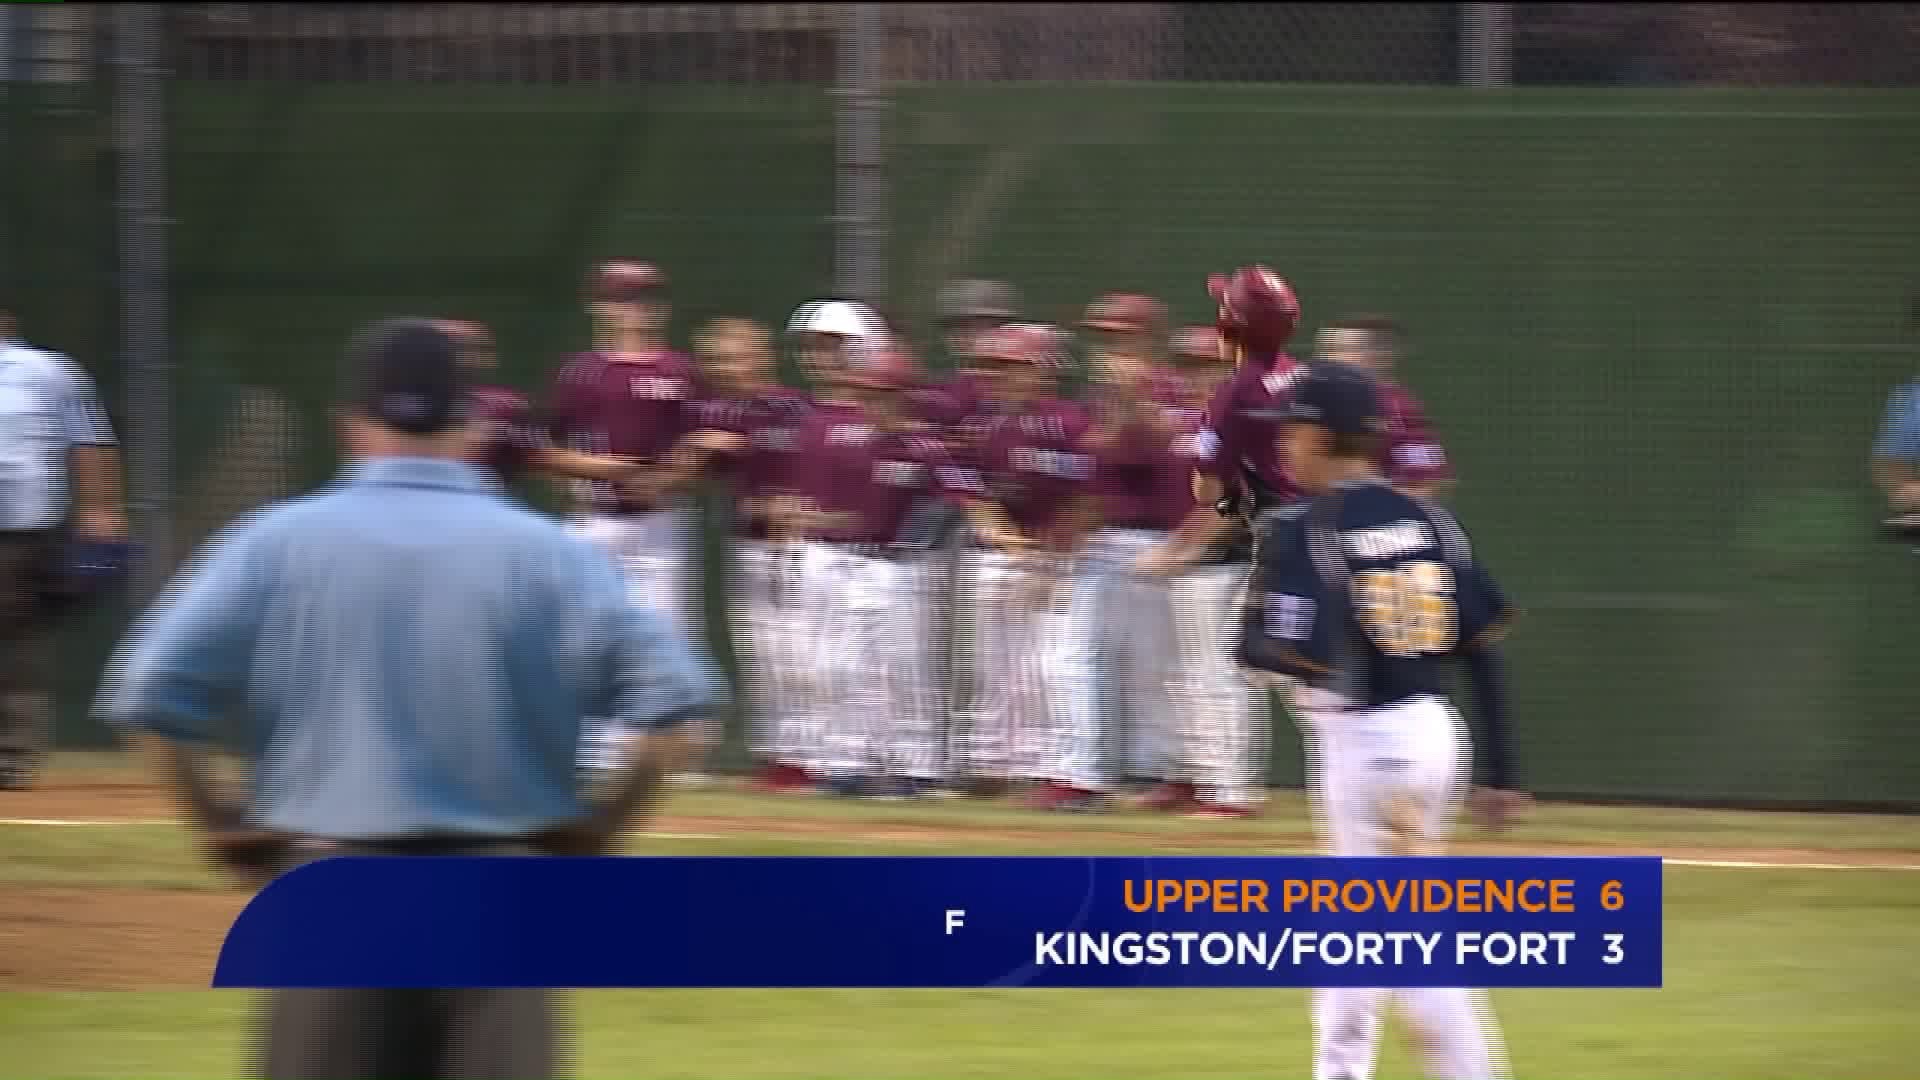 Kingston/Forty Fort vs Upper Providence LL